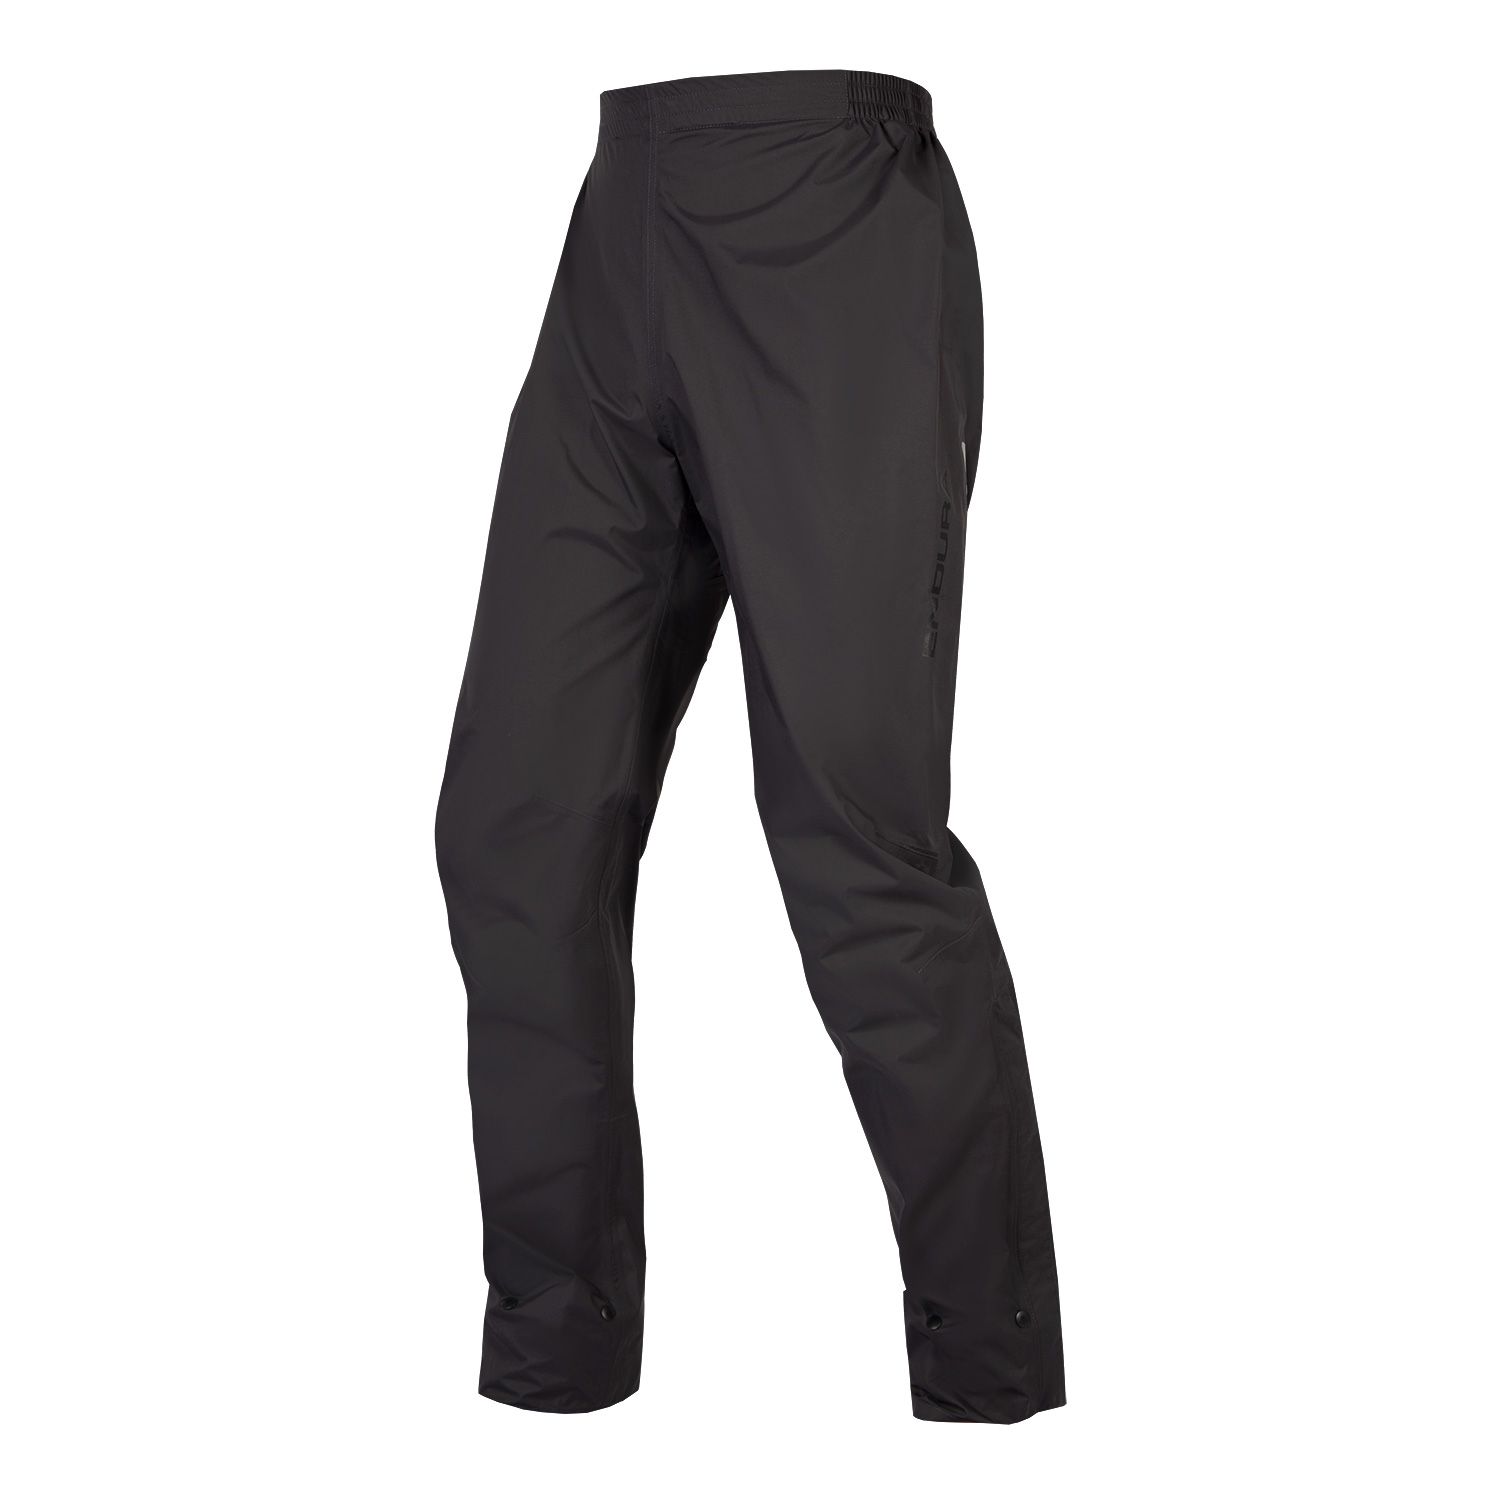 Endura Urban Luminite Waterproof Pants - £44.99 | Shorts, Tights and ...